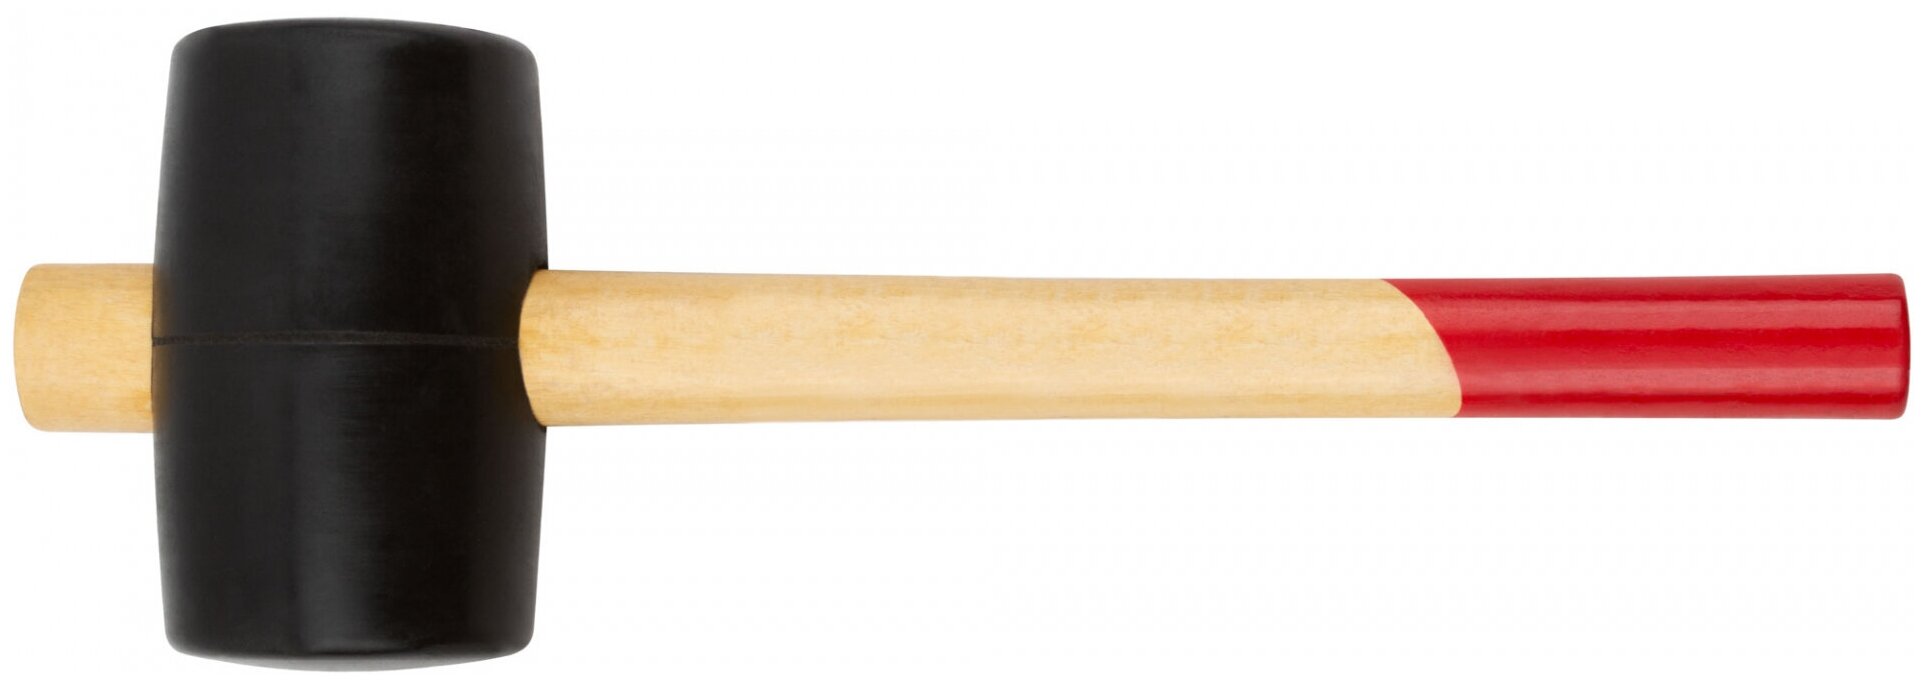 Киянка резиновая, деревянная ручка 55 мм ( 400 гр ) (45355)